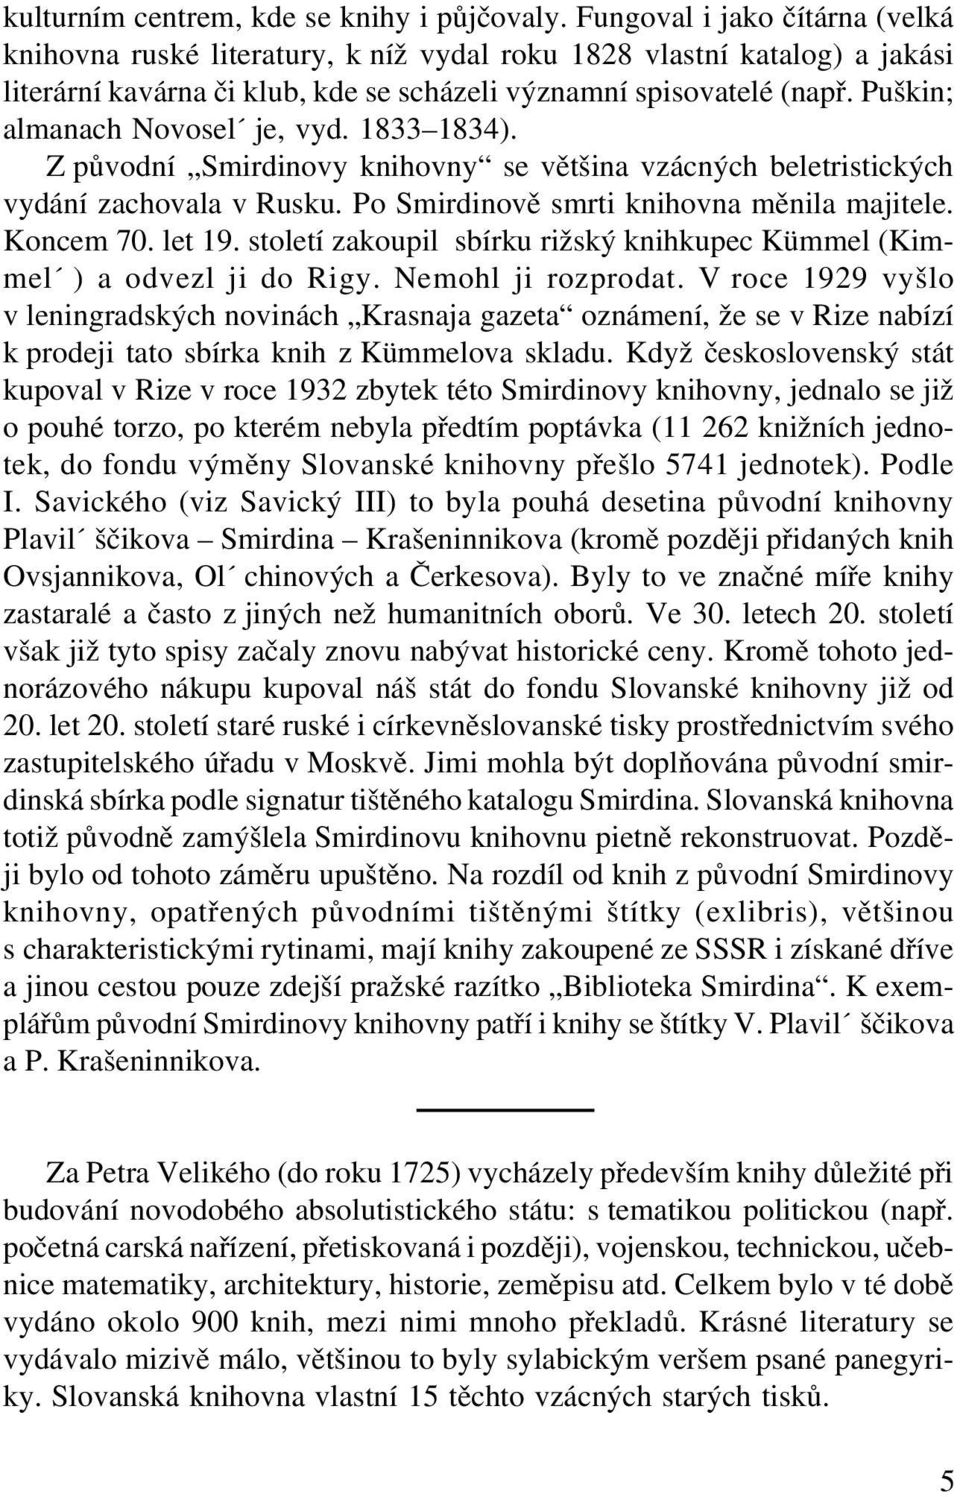 Puškin; almanach Novosel je, vyd. 1833 1834). Z původní Smirdinovy knihovny se většina vzácných beletristických vydání zachovala v Rusku. Po Smirdinově smrti knihovna měnila majitele. Koncem 70.